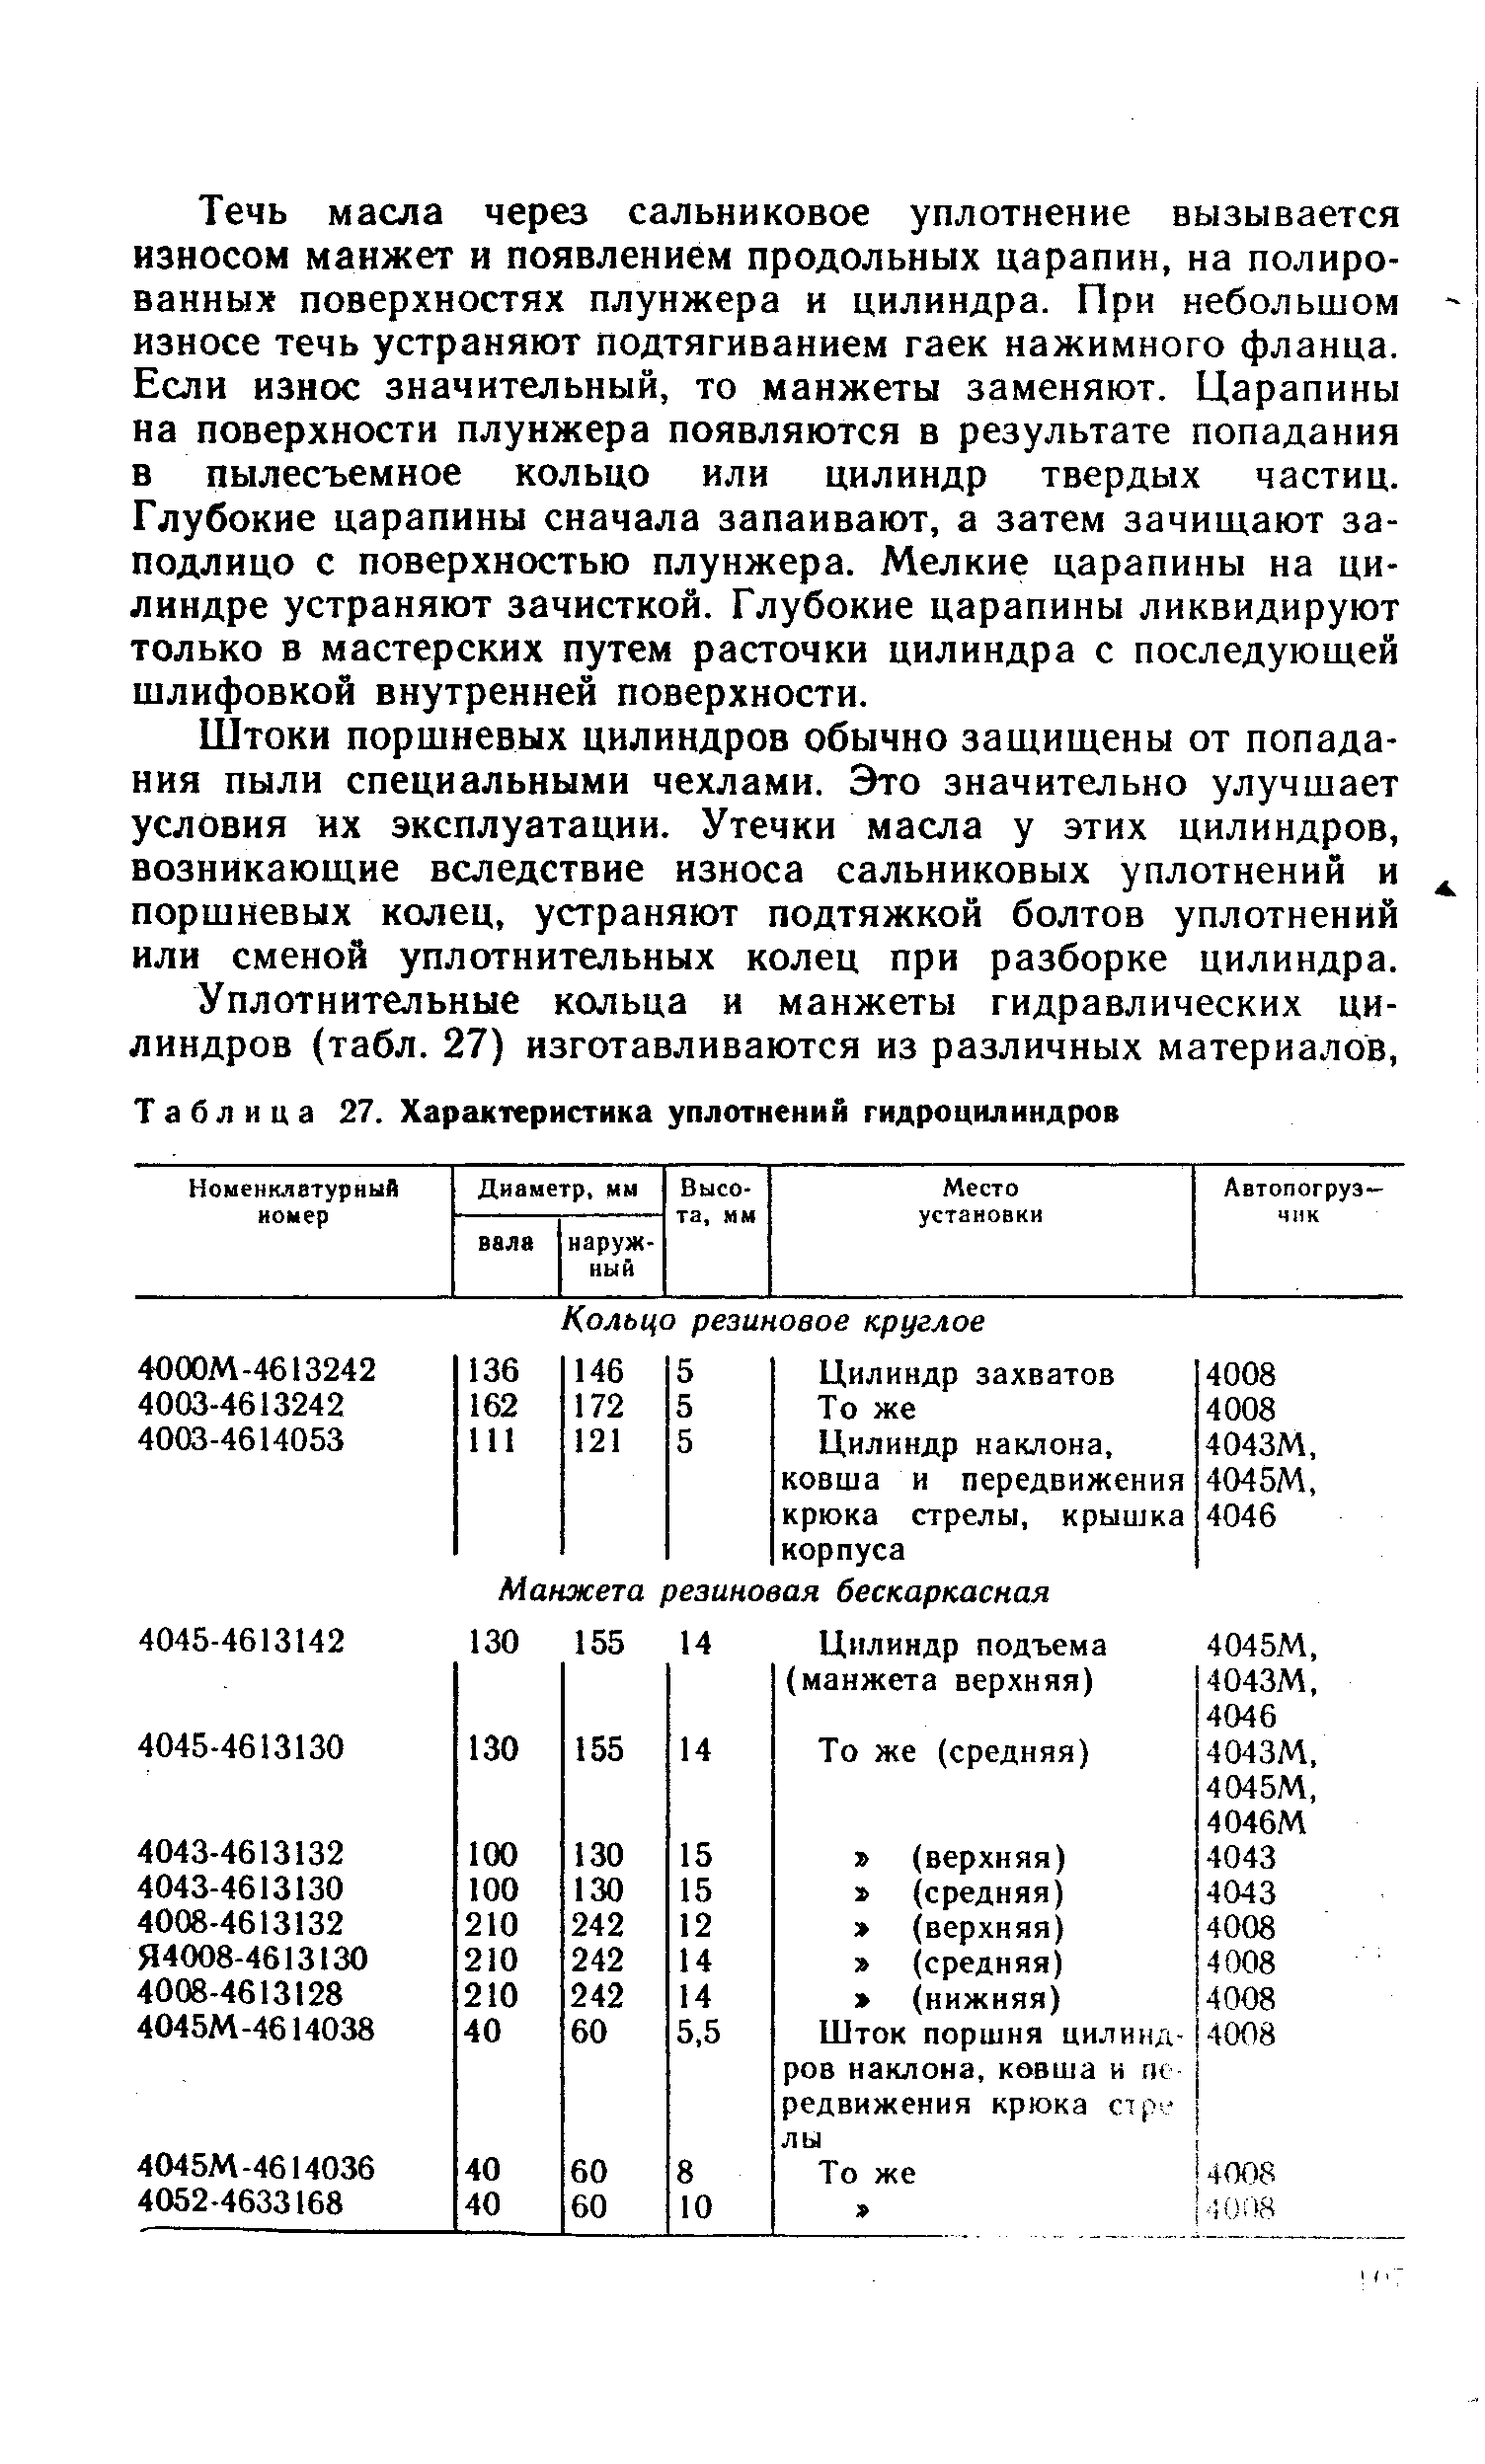 Таблица 27. Характеристика уплотнений гидроцилиндров
